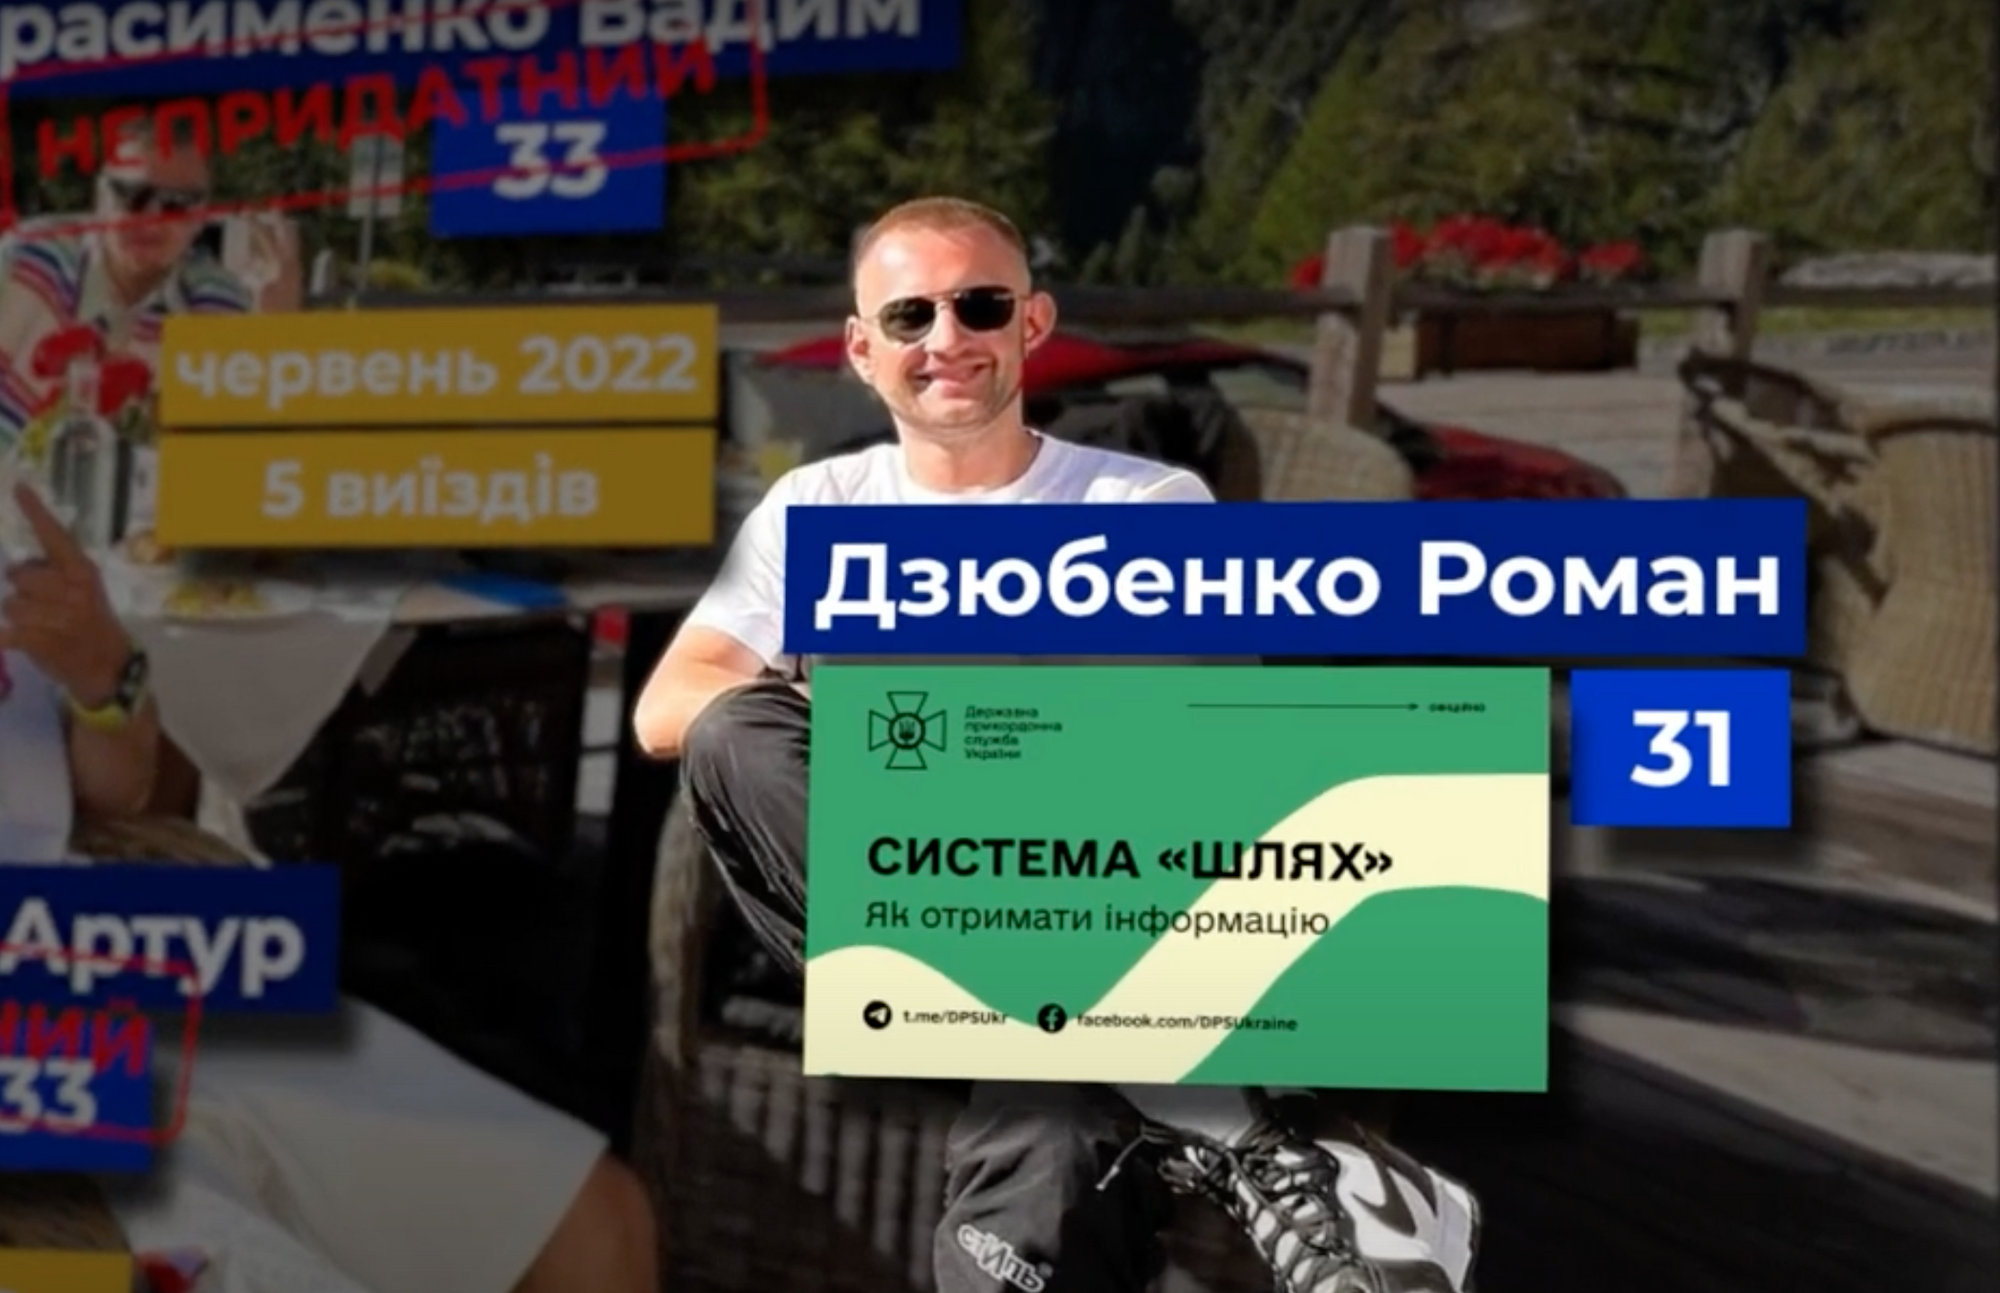 25-річний український мільйонер із друзями демонстративно розважаються за кордоном: як вони виїхали? Розслідування